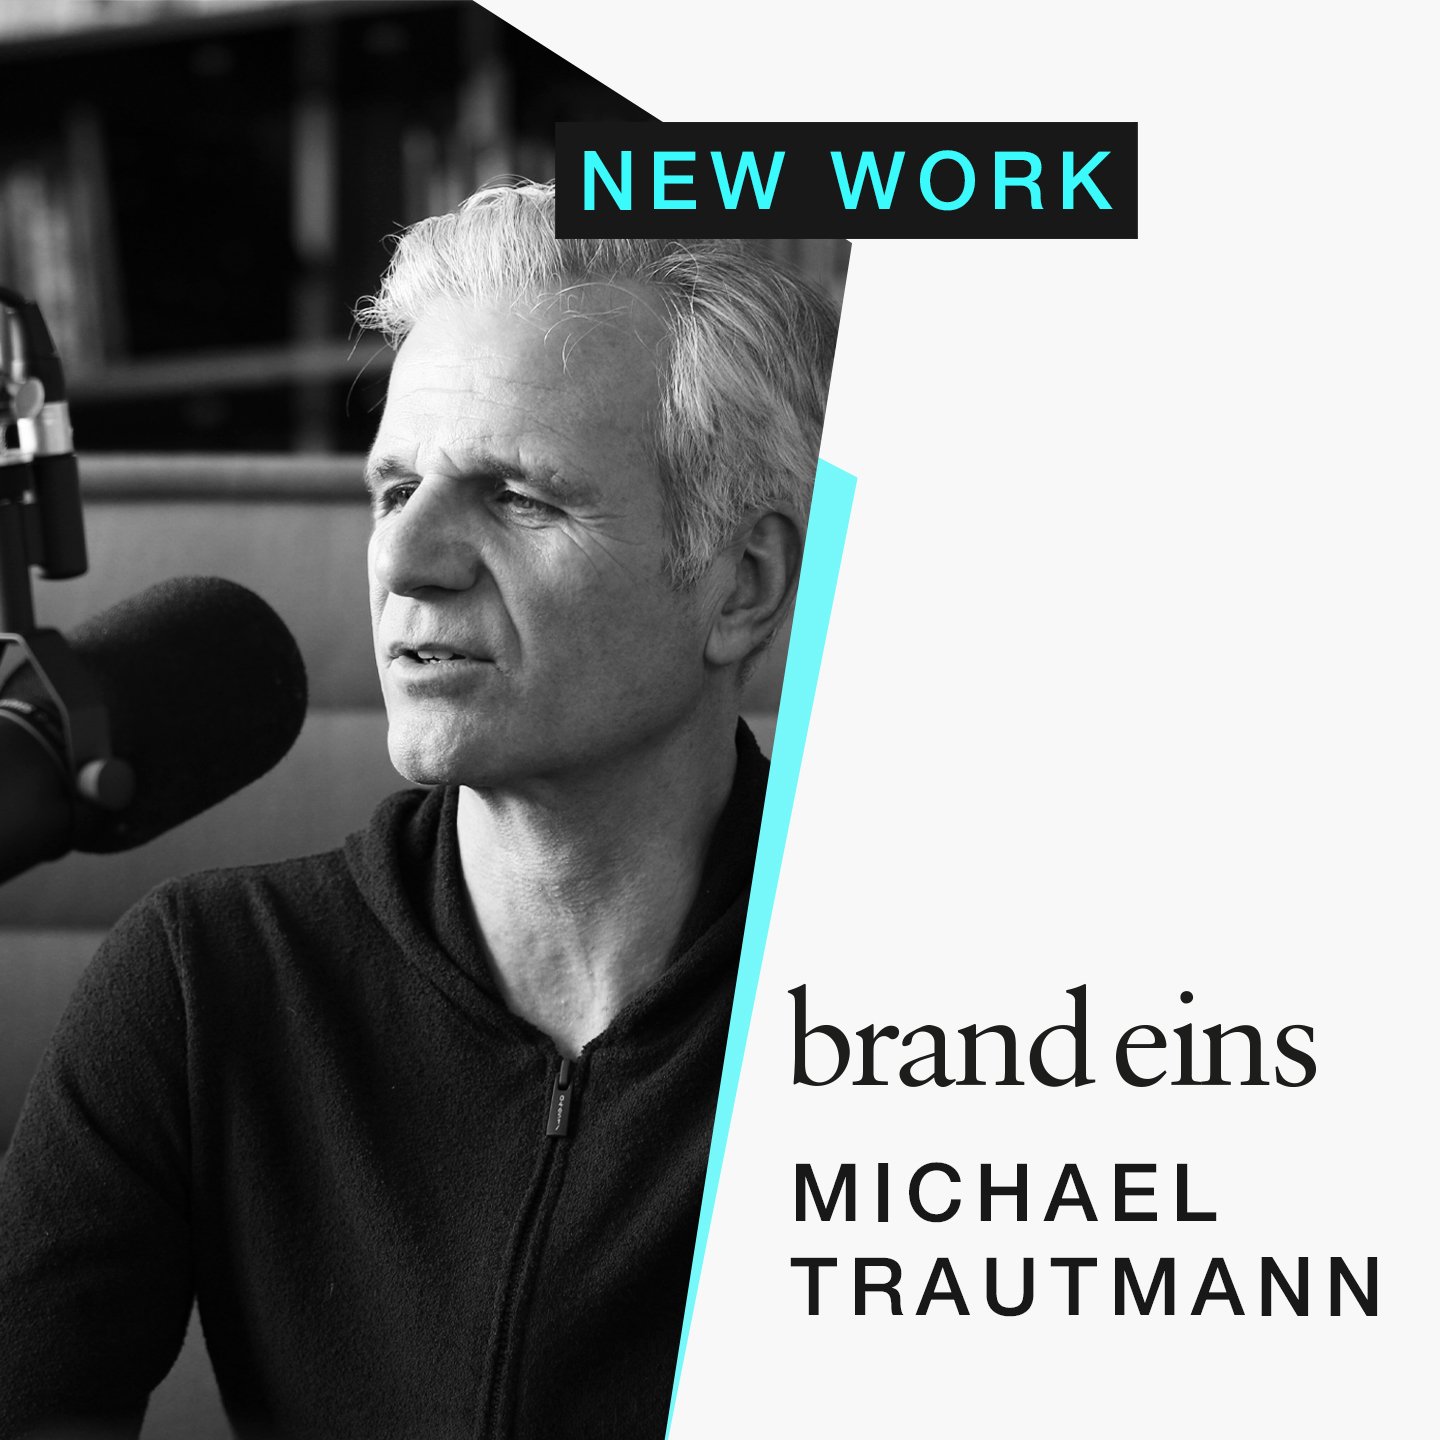 Michael Trautmann: New Work